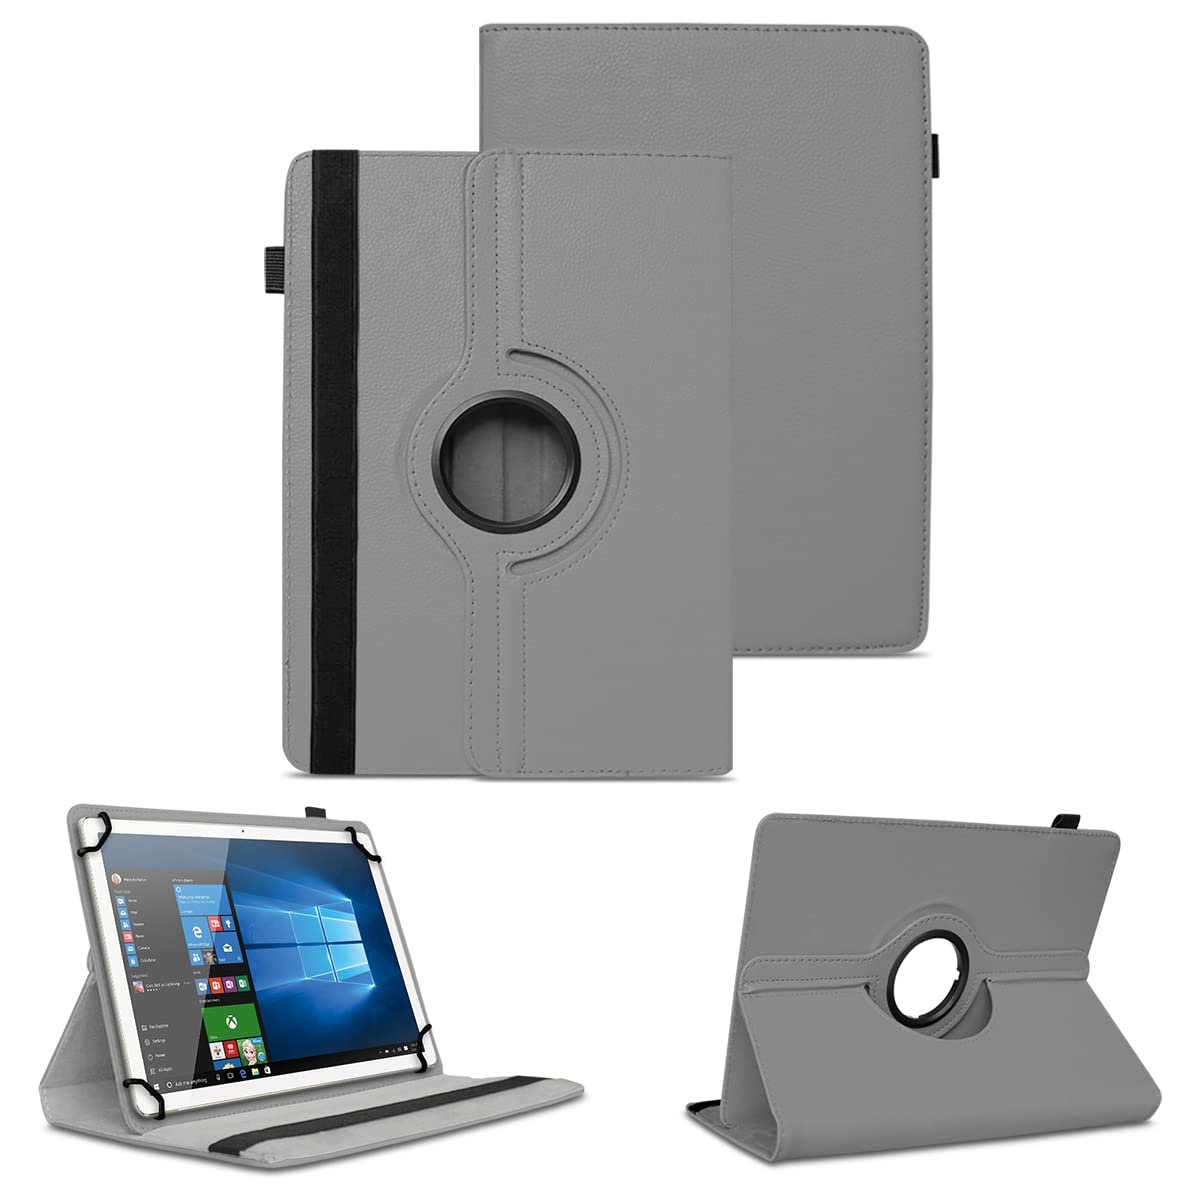 NAUC Tablet Hülle kompatibel mit Acepad A14 A145 A140 A130 A121 A12X A101 Tasche Schutzhülle Cover 360° Drehbar Schutz Case Ständer, Farben:Grau